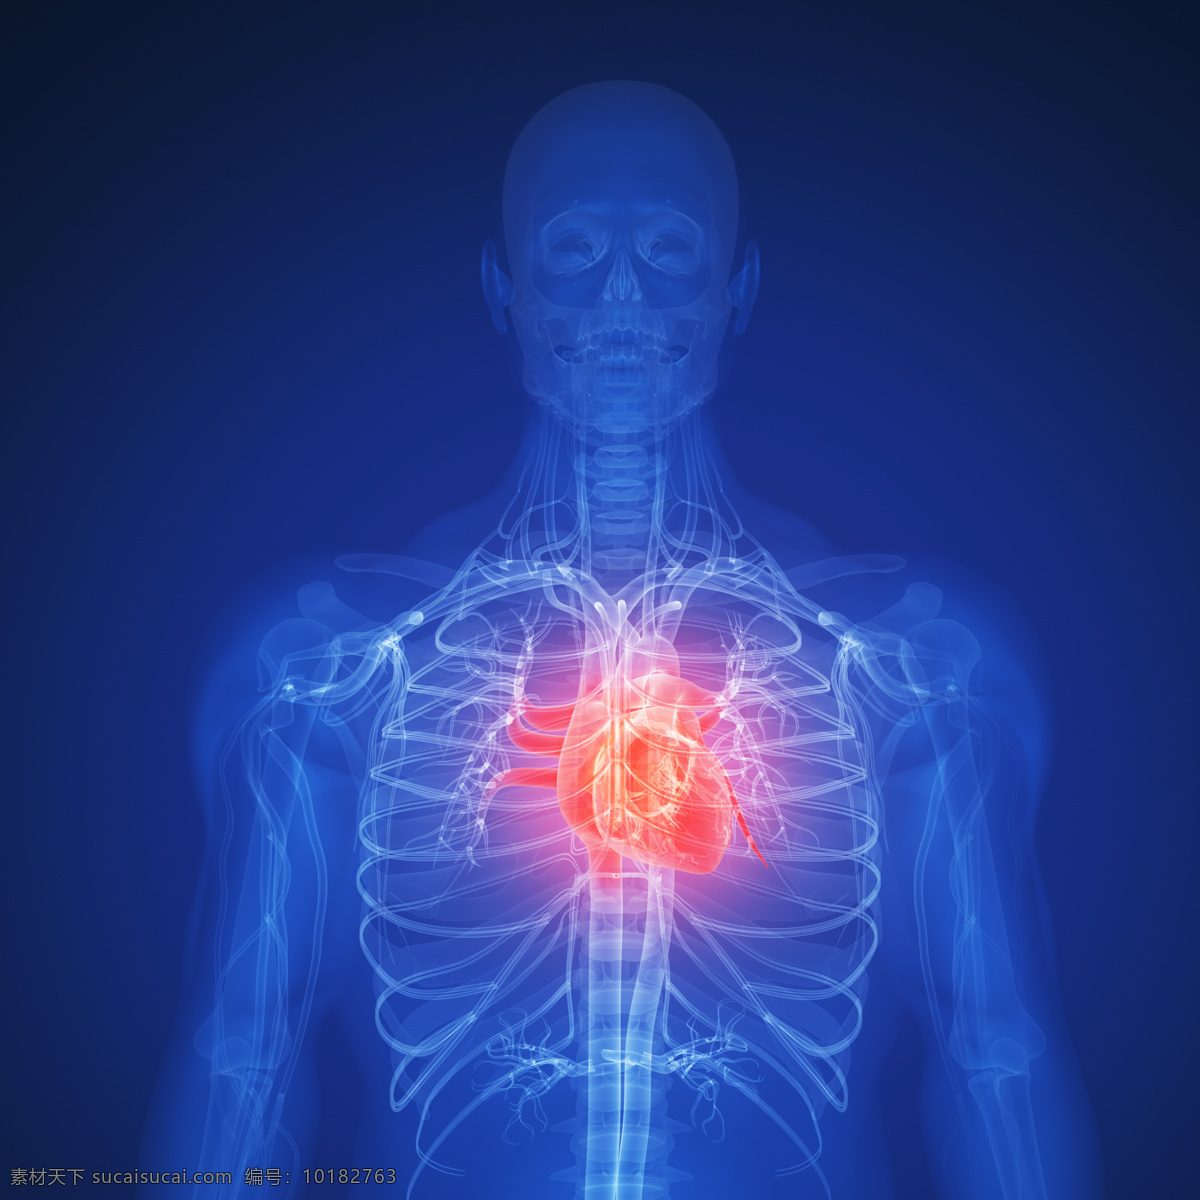 人体 肺部 x 光 透视图 医疗主题 x光 图像 医疗护理 现代科技